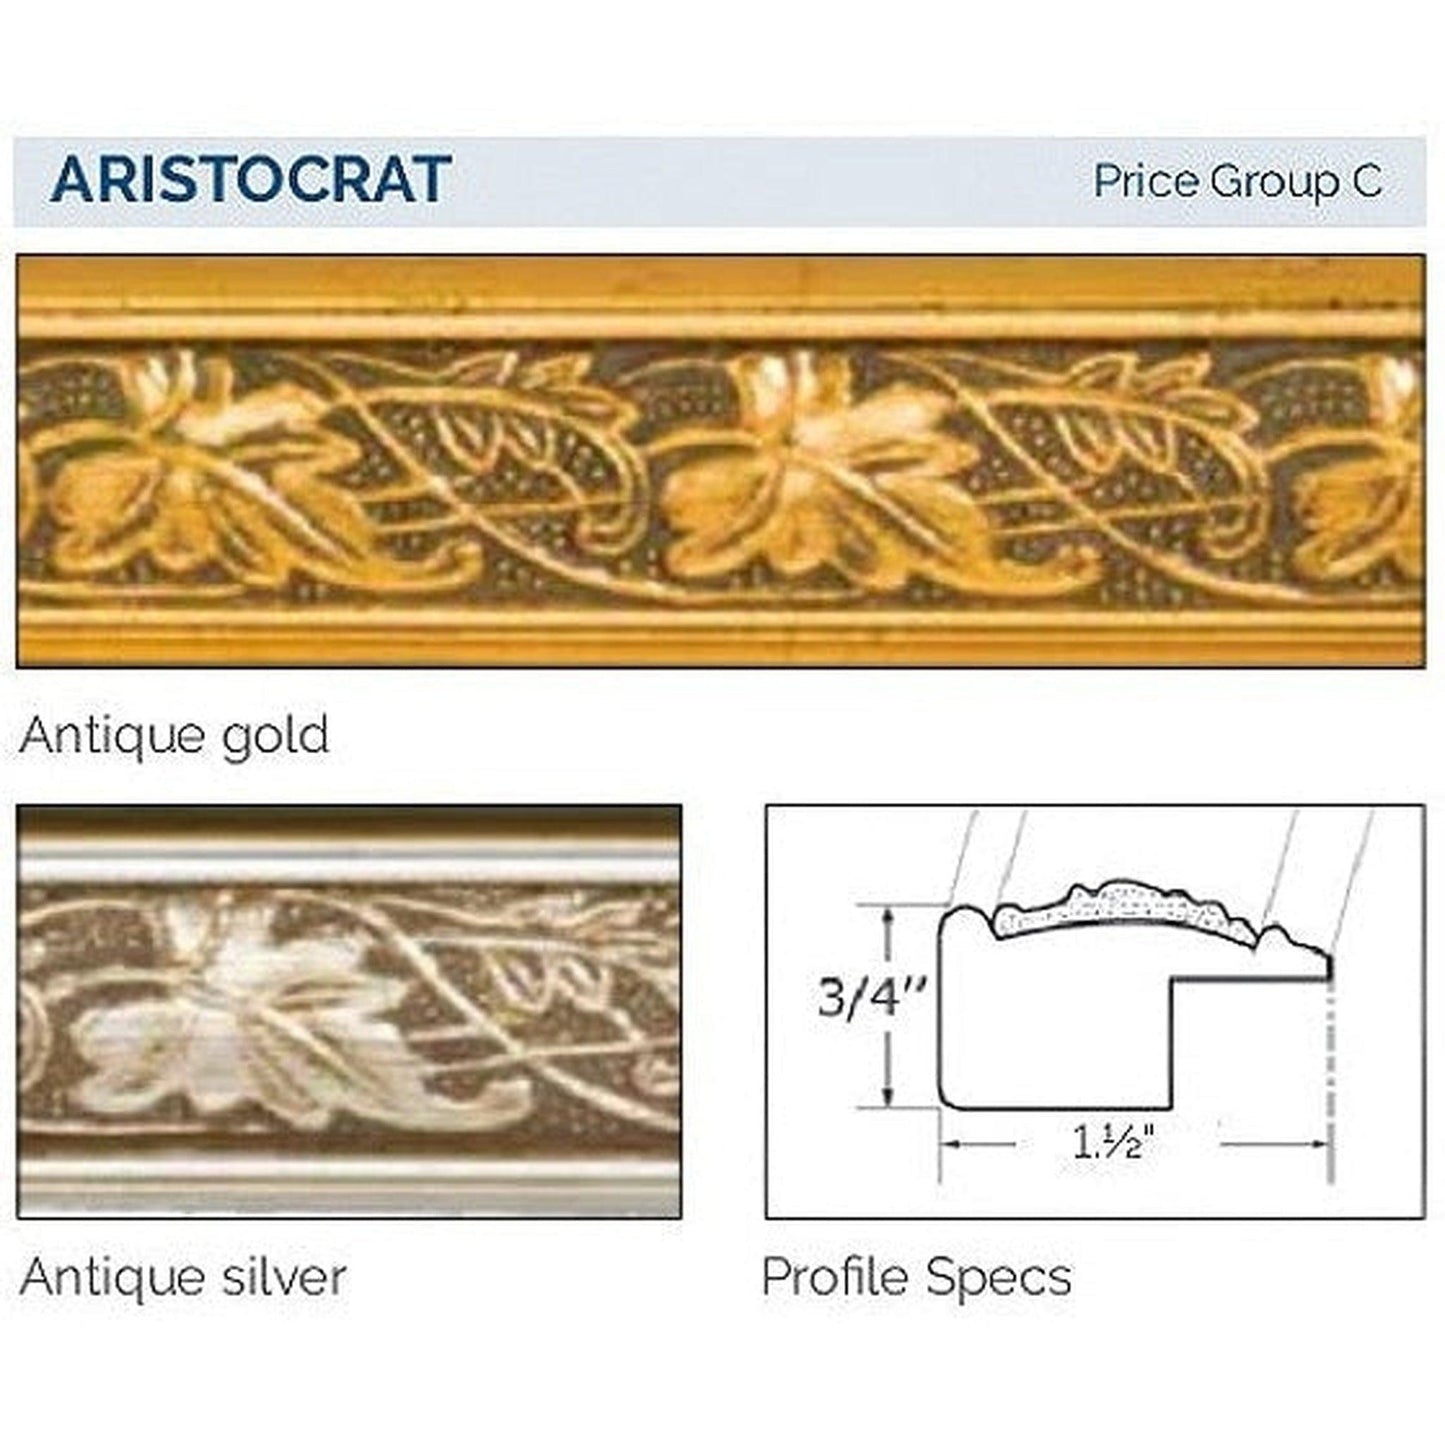 Afina Signature 63" x 36" Aristocrat Antique Silver Recessed Four Door Medicine Cabinet With Beveled Edge Mirror